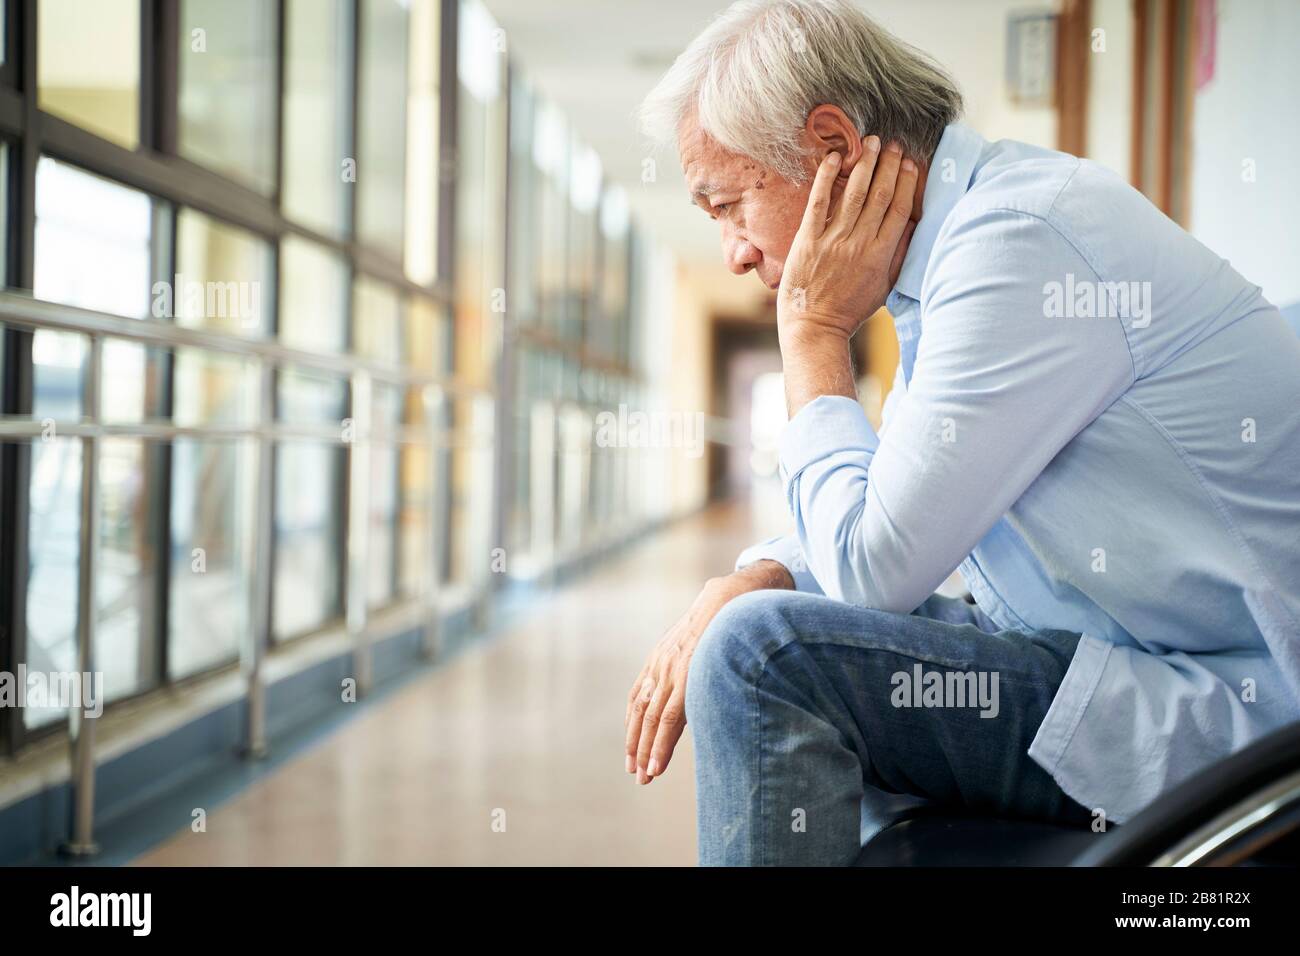 Trauriger und verwüsteter asiatischer Obermann, der allein in einem leeren Krankenhausflur sitzt, Kopf in der Hand Stockfoto